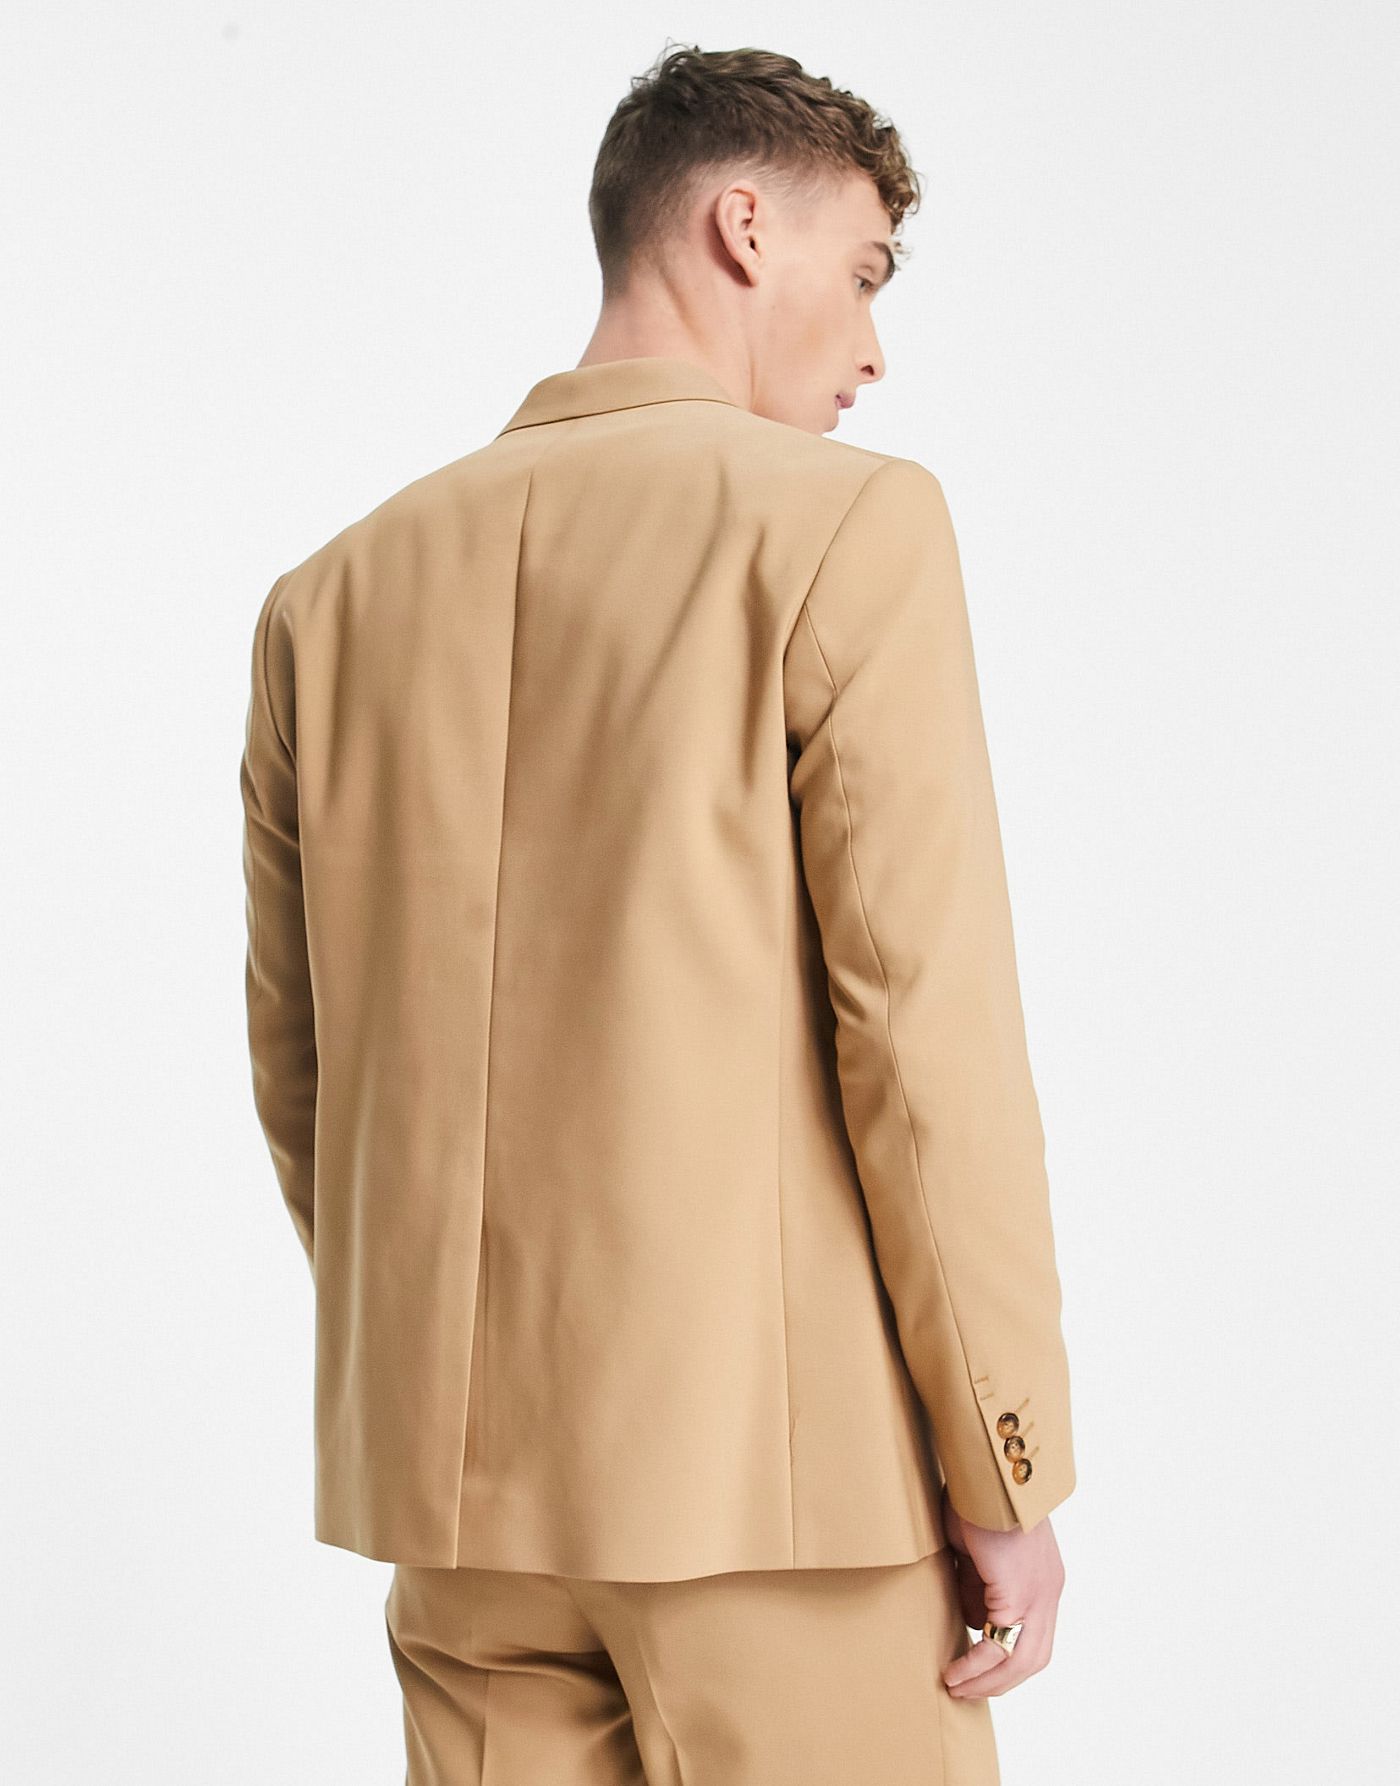 Viggo pierre suit jacket in beige